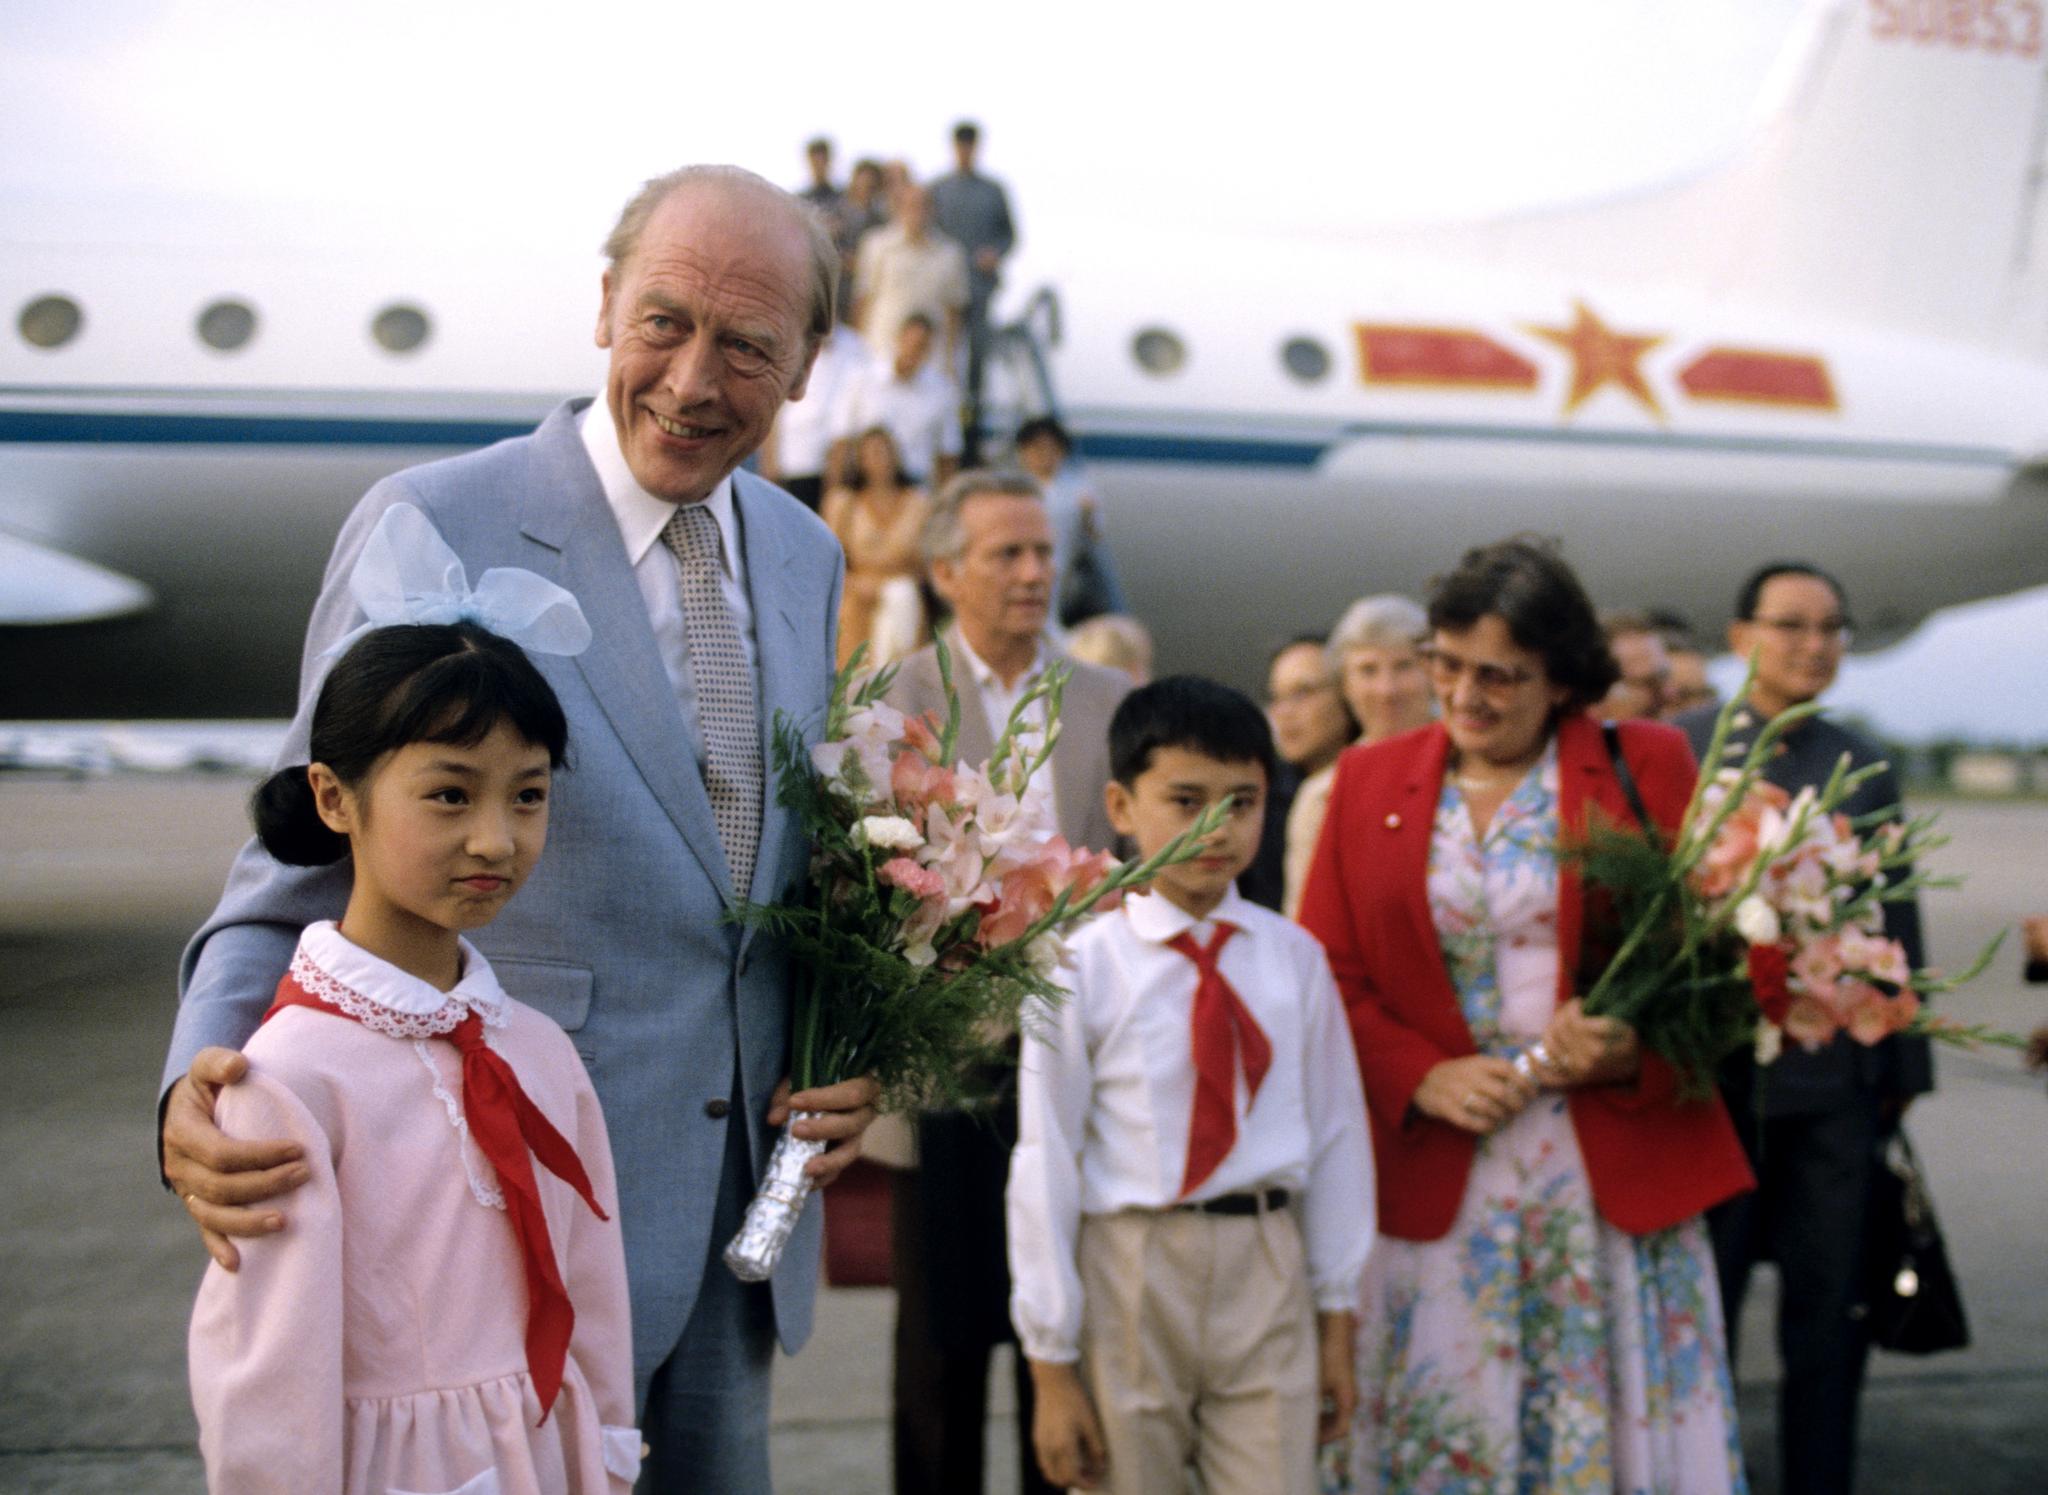  For første gang var en norsk statsminister på offisielt besøk i Kina, i 1980. Statsminister Odvar Nordli (Ap) understreket at hans hovedhensikt med besøket i Kina var å skape kontakt. Her sammen med noen barn på en flyplass. 